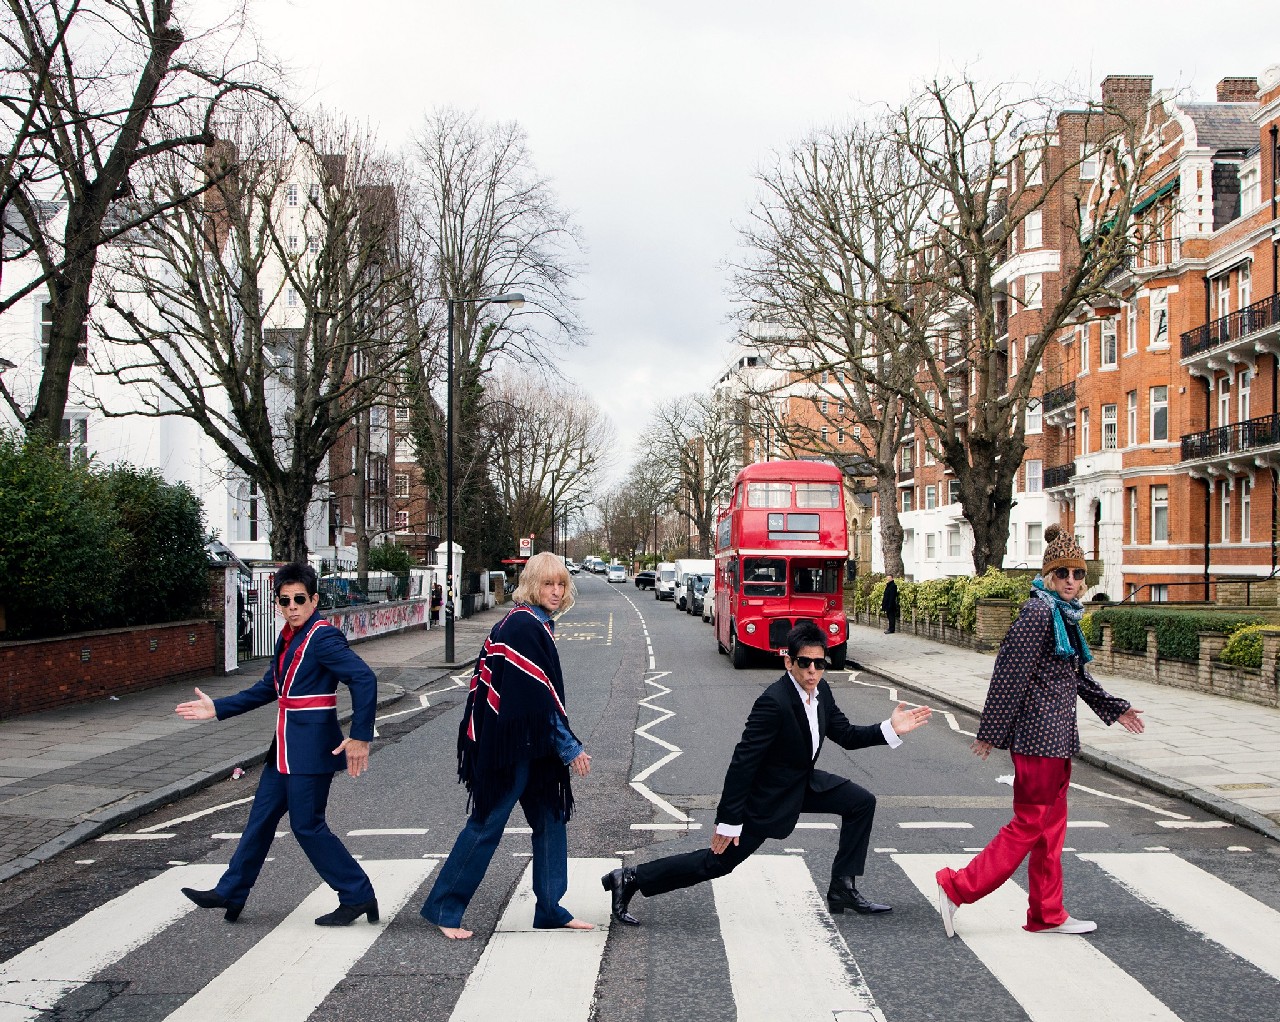 Zoolander 2 premiere Londra: il blue carpet, la selfie più lunga del mondo e le foto iconiche ad Abbey Road